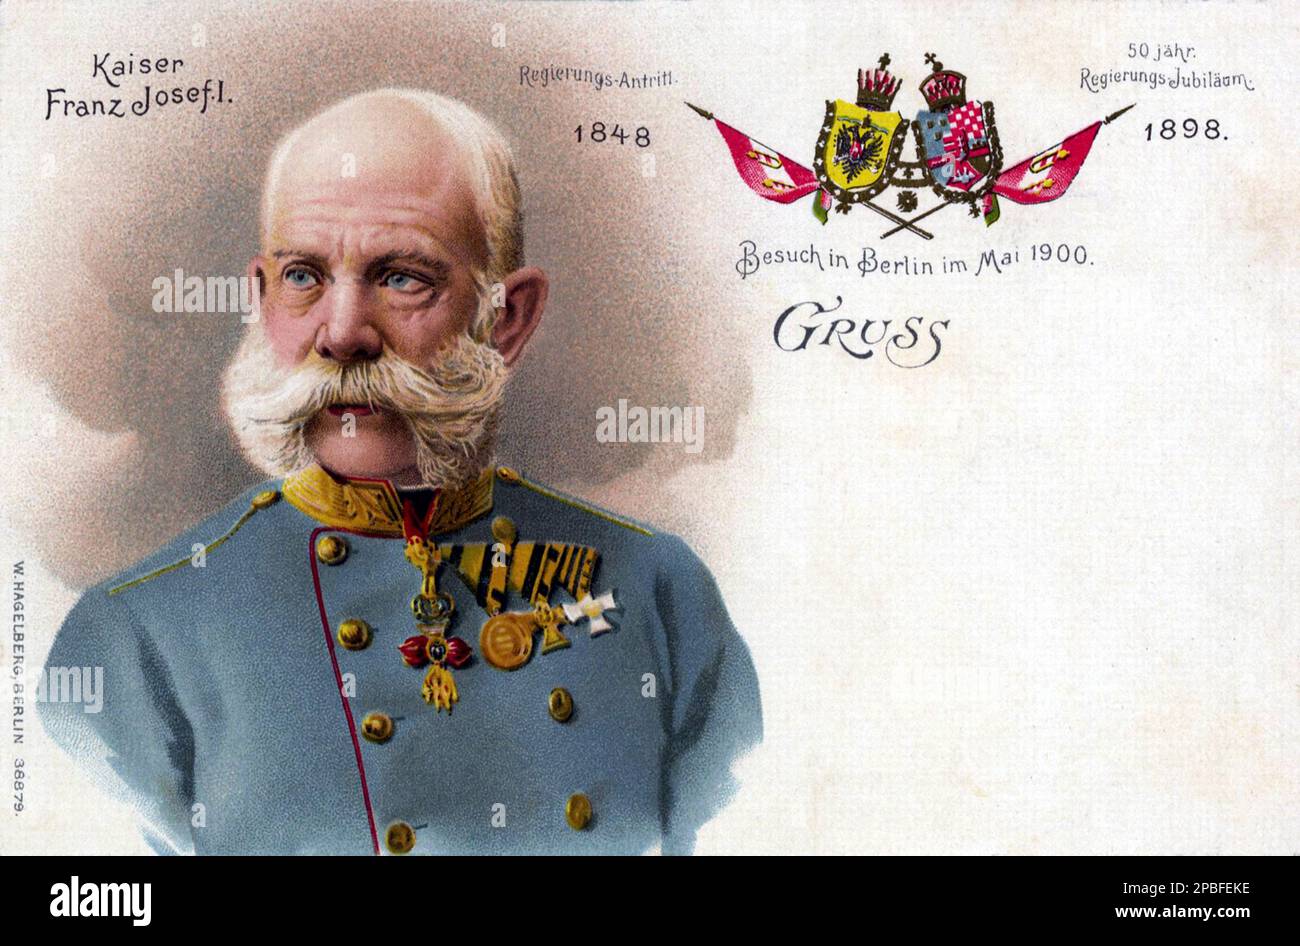 1898 , ÖSTERREICH : der österreichische Kaiser FRANZ JOSEF von ABSBURG ( 1830 - 1916 ) , Kaiser von Österreich , König von Ungarn und Böhmen , Postkarte für das Jubiläum 1848-1898 . - FRANCESCO GIUSEPPE - JOSEPH - ABSBURG - ASBURG - ASBURGO - ADEL - NOBILI - Nobiltà - REALI - HABSBURG - HASBURG - ADEL - ÖSTERREICH - Bart - barba - Baffi - Schnurrbart - Militäruniform - divisa uniforme militare - Francesco Giuseppe - Cartolina - giubileo - giubileo -- - Archivio GBB Stockfoto